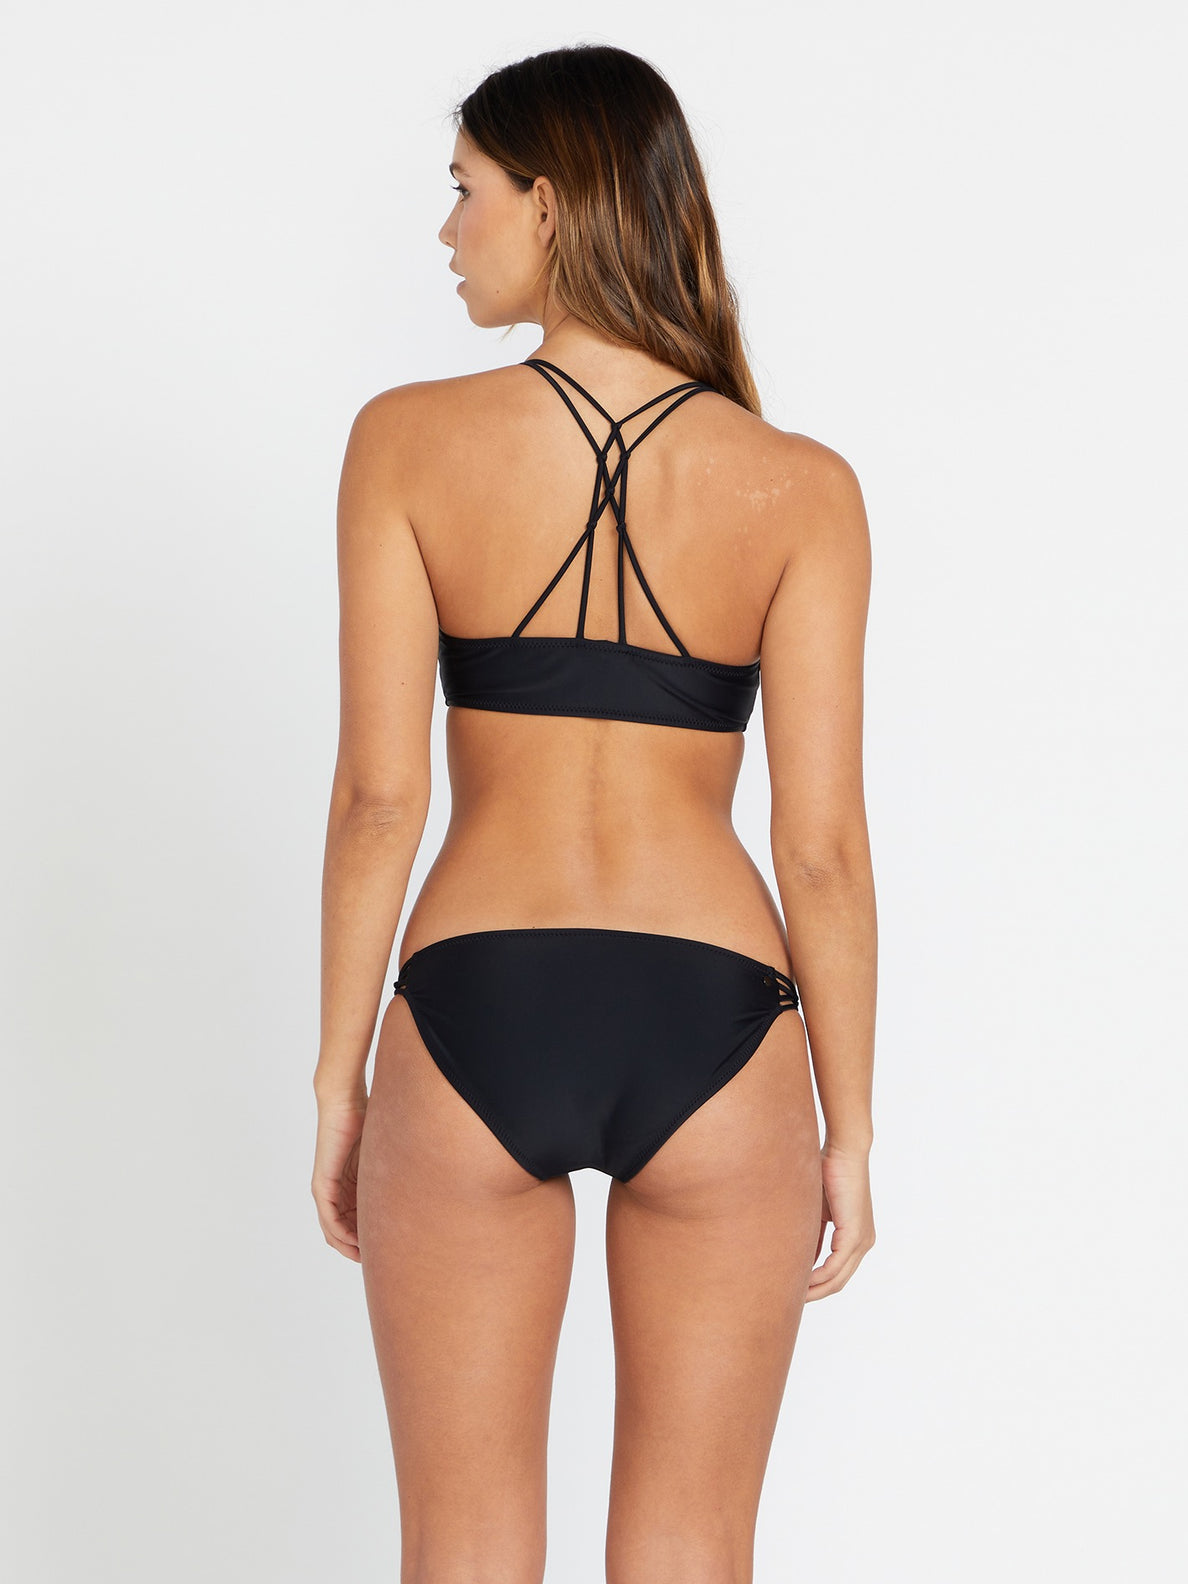 Simply Solid V Neck Bikini Top - Black